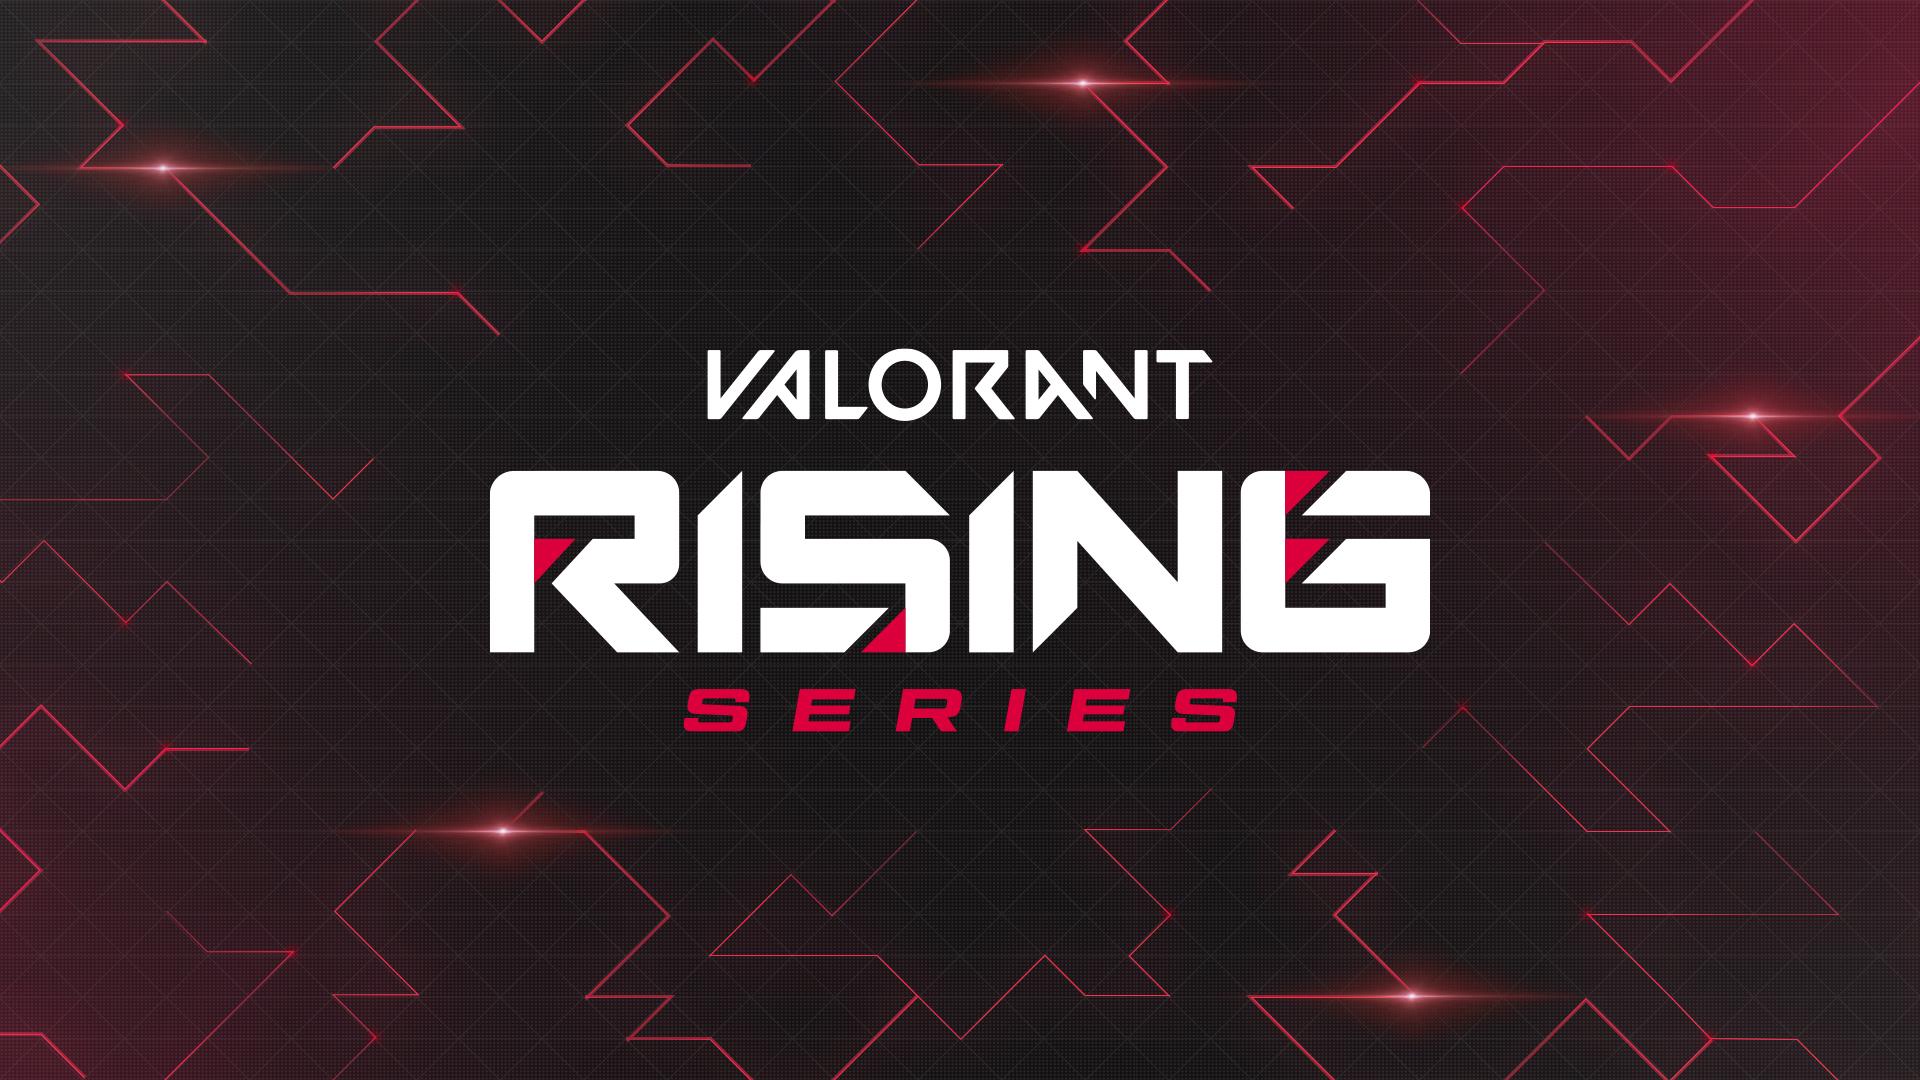 Valorant Rising Series